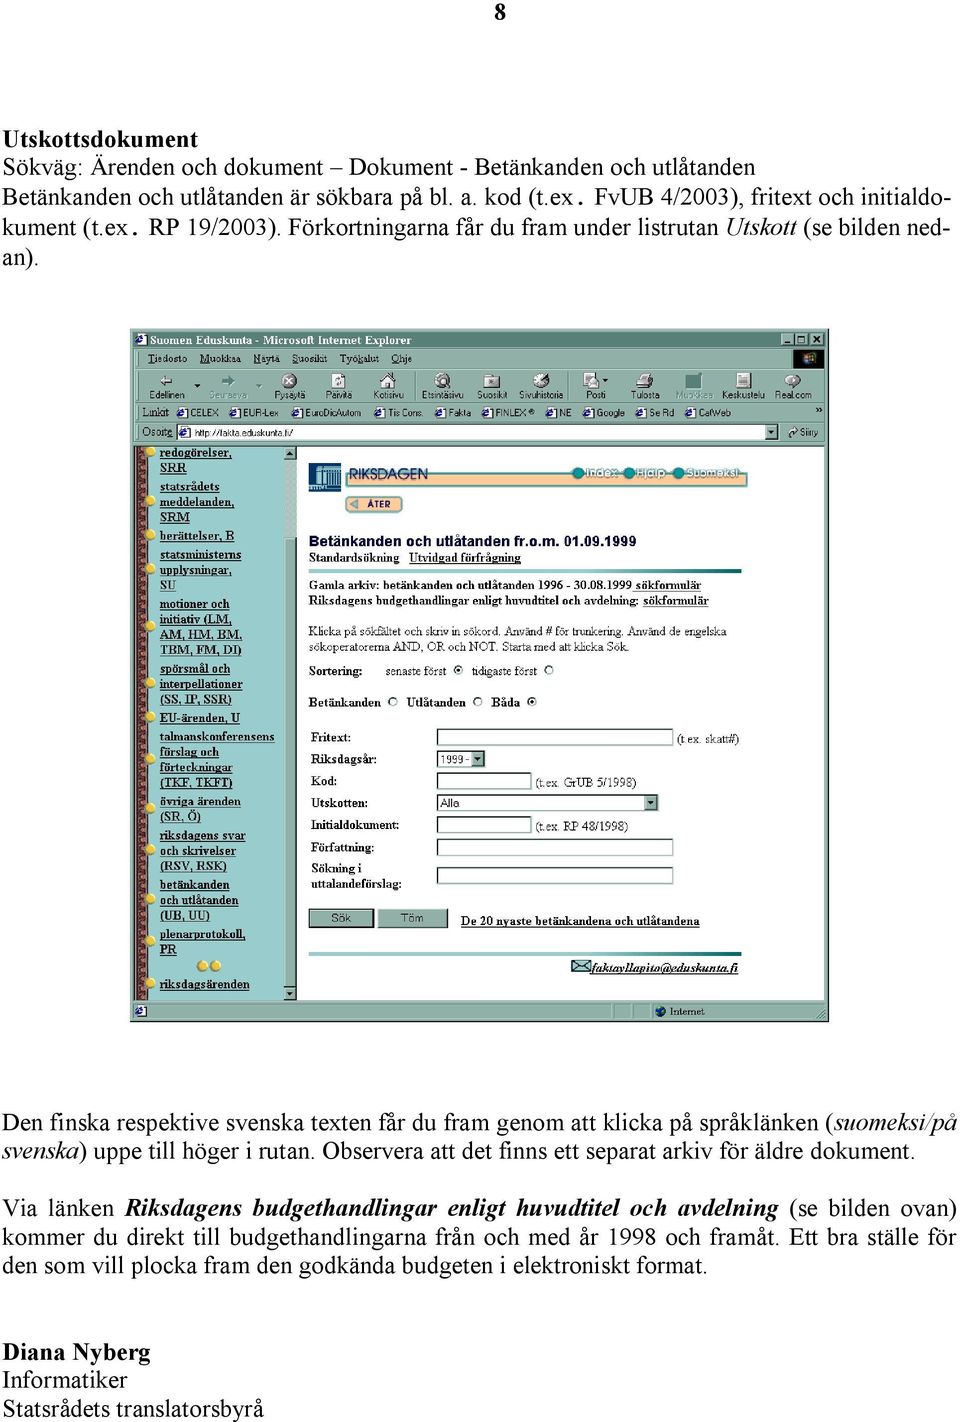 Den finska respektive svenska texten får du fram genom att klicka på språklänken (suomeksi/på svenska) uppe till höger i rutan. Observera att det finns ett separat arkiv för äldre dokument.